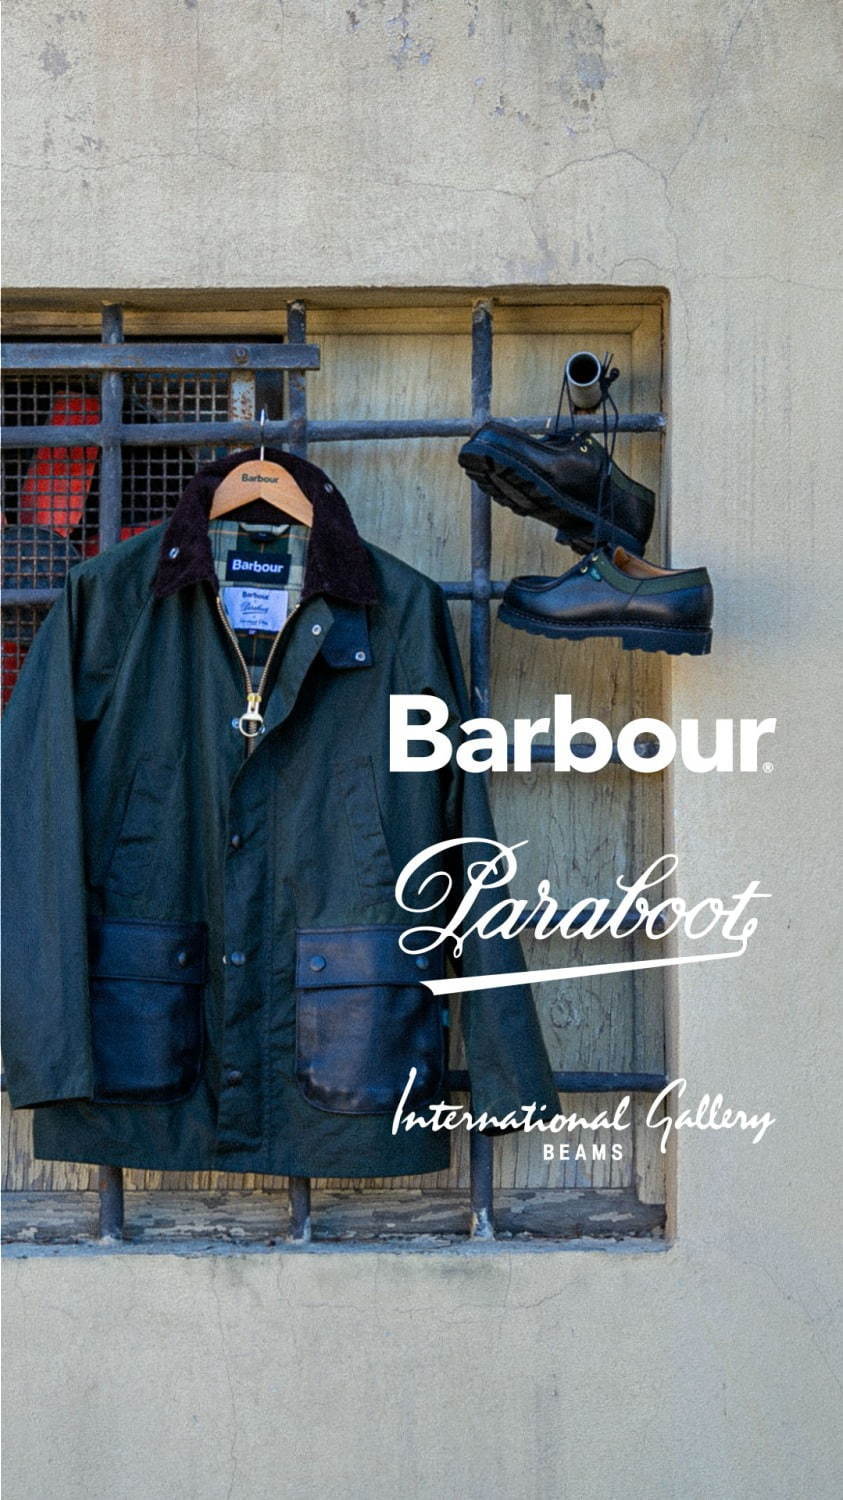 バブアー(Barbour), パラブーツ(Paraboot), インターナショナルギャラリー ビームス(International Gallery BEAMS) ビデイル｜写真8